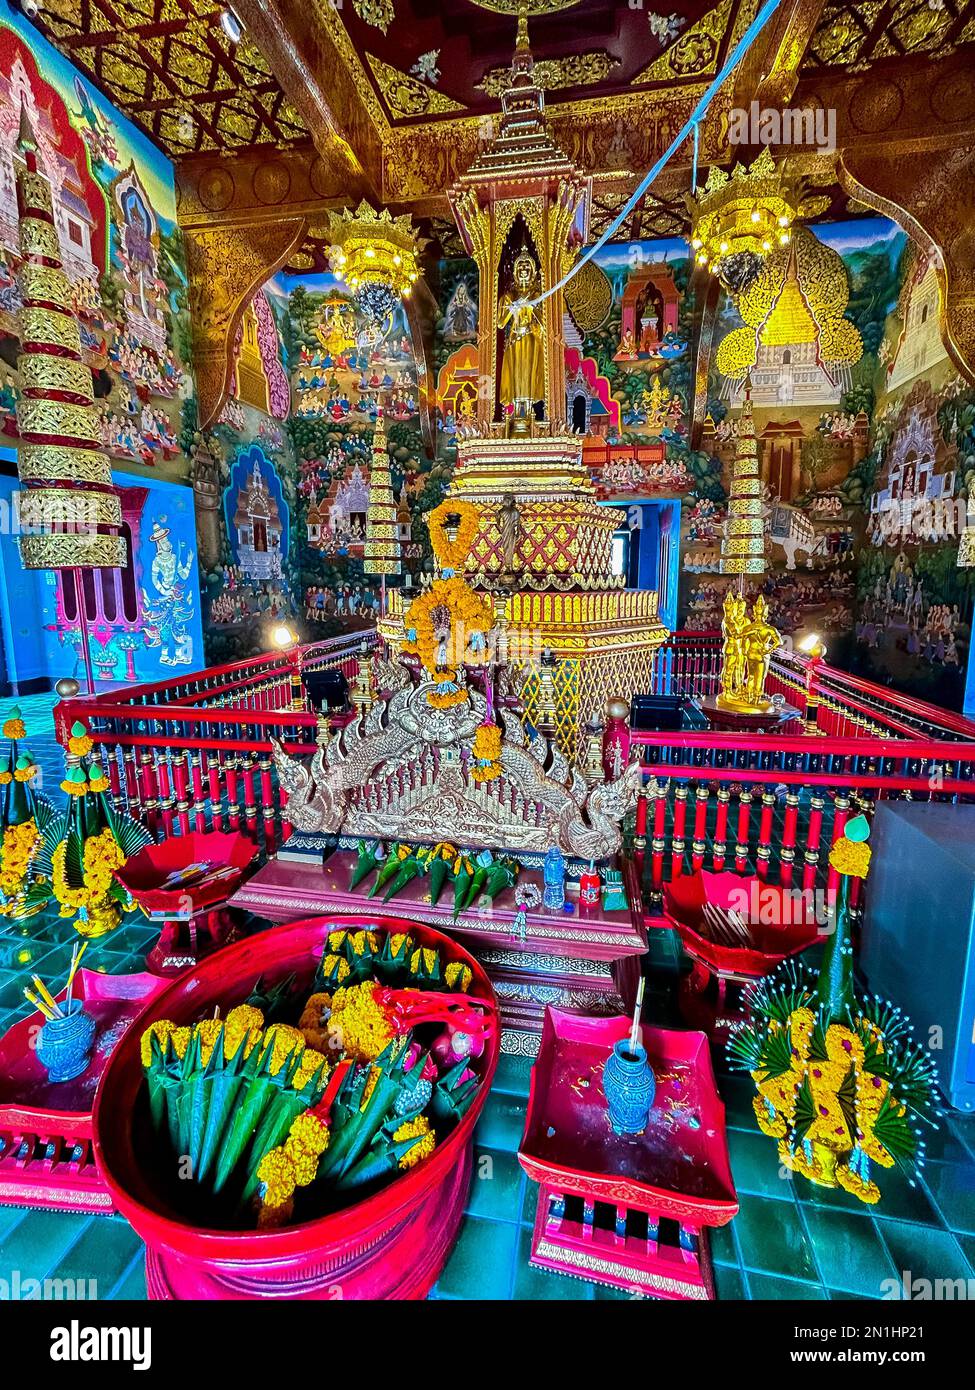 Mueang, Chiang mai, Thailandia, Vista interna dell'altare, che mostra offerte a Buddha, decorazioni,, a Phra Singh (nome completo: Wat Phra Singh Woramahaviharn; Thai: วัดพระสิงห์วรมหาวิหาร; RTGS: Wat Phra Sing Wora Maha Wihan; (pronuncia); Tailandese settentrionale: LN-Wat che frasca Woravihar.png) è un tempio del nord della Thailandia: Wist. Re Ananda Mahidol (Rama VIII), gli conferì lo status di tempio reale di primo grado nel 1935. Foto Stock